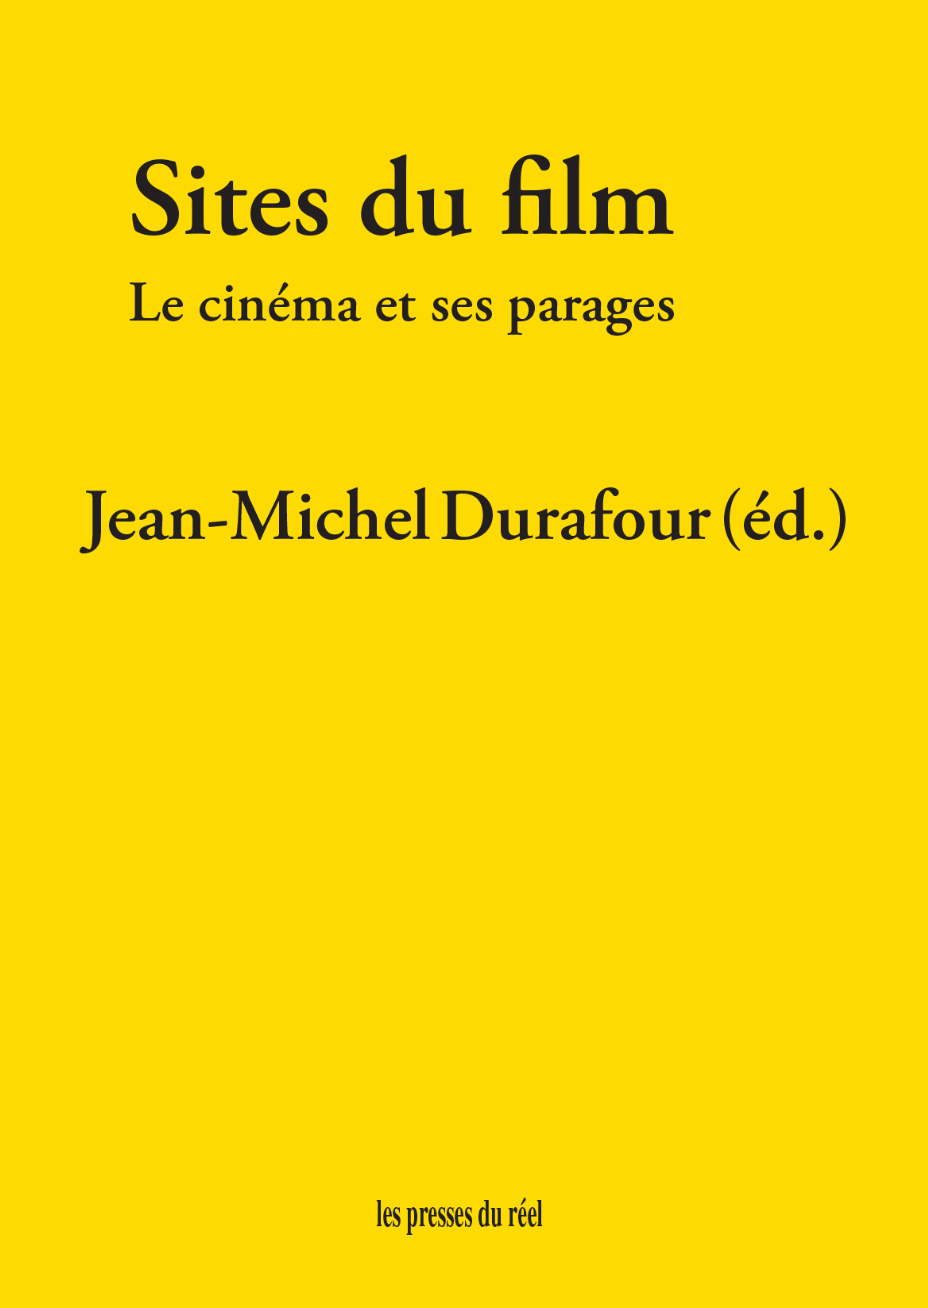 Jean-Michel Durafour (éd.), Sites du film. Le cinéma et ses parages